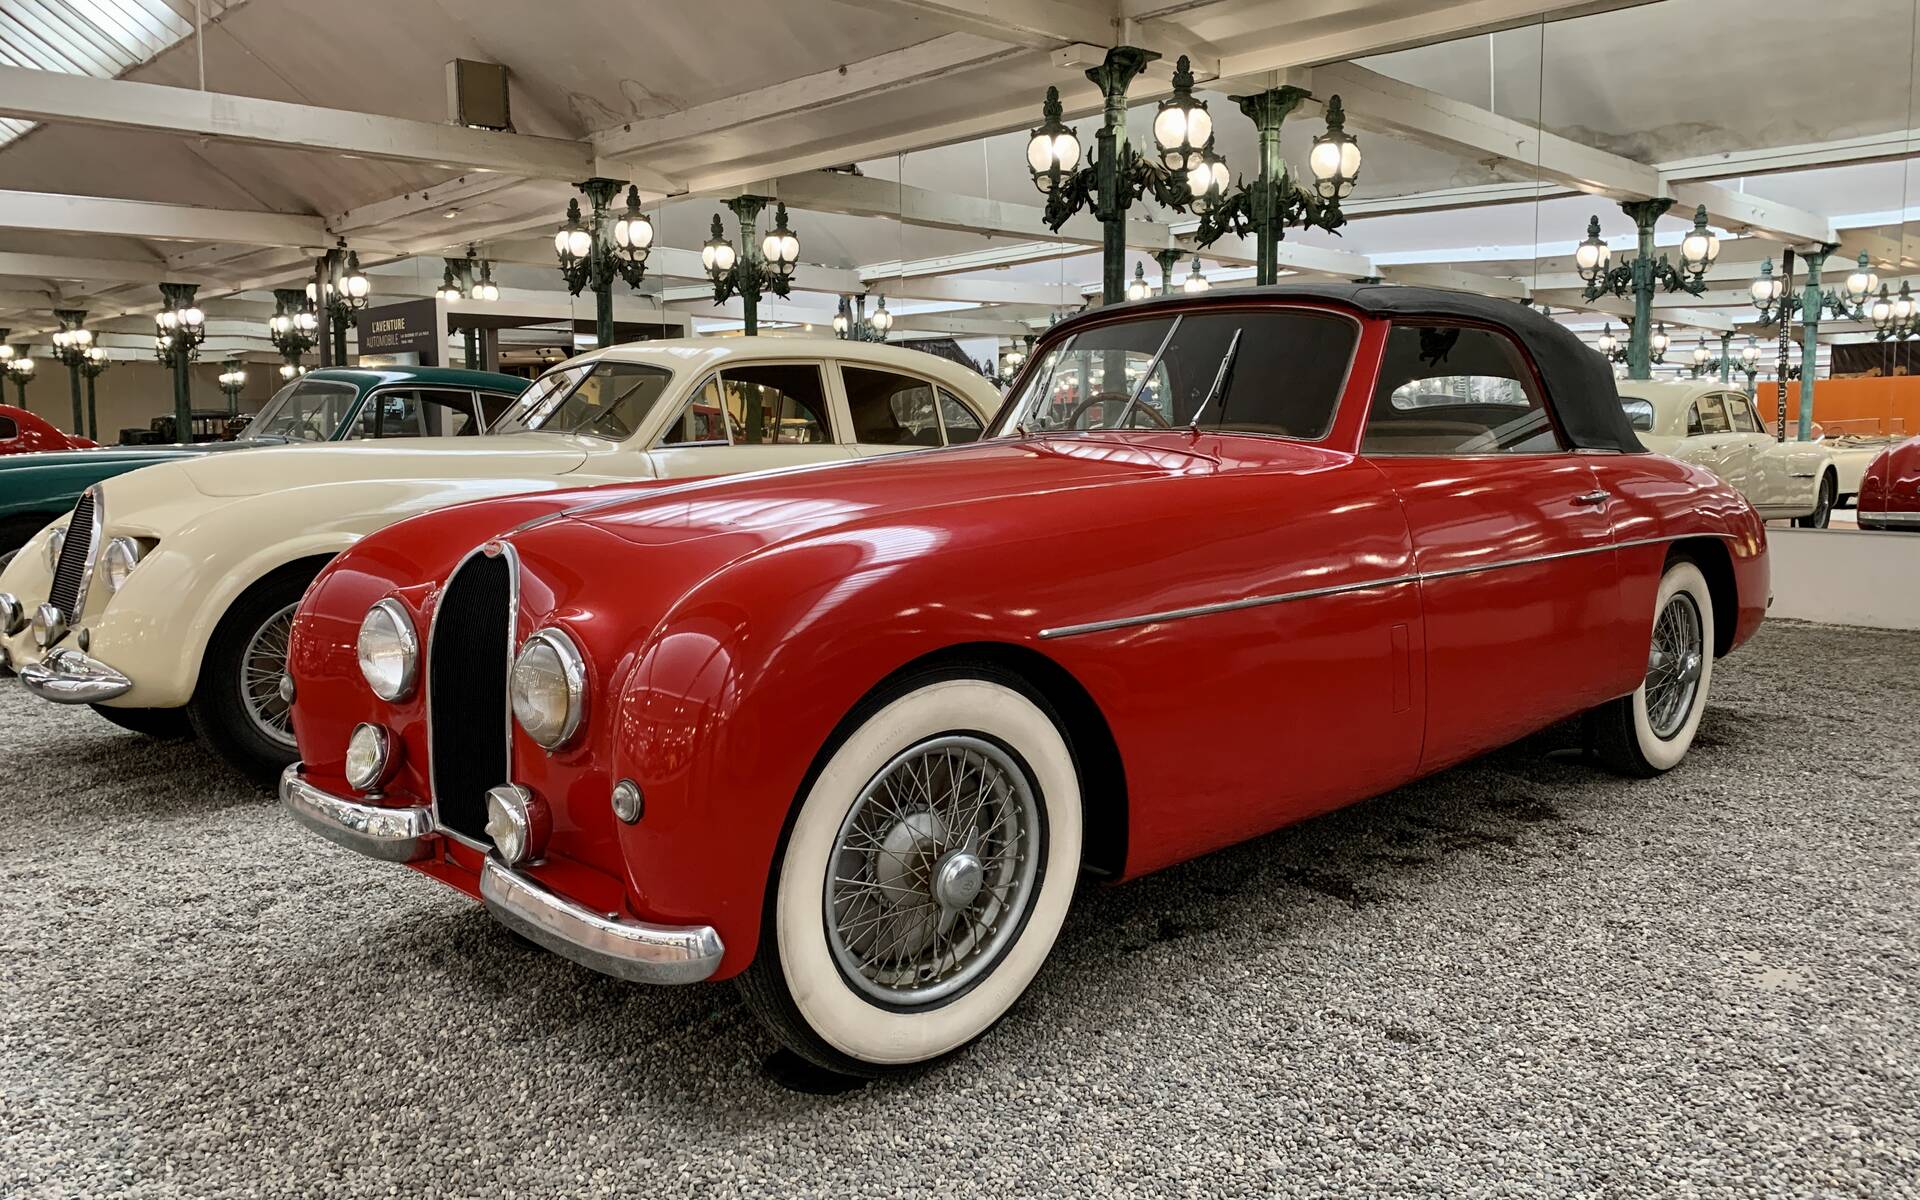 En photos : une centaine de Bugatti réunies dans un même musée 503071-en-photos-des-dizaines-de-bugatti-reunies-dans-un-meme-musee